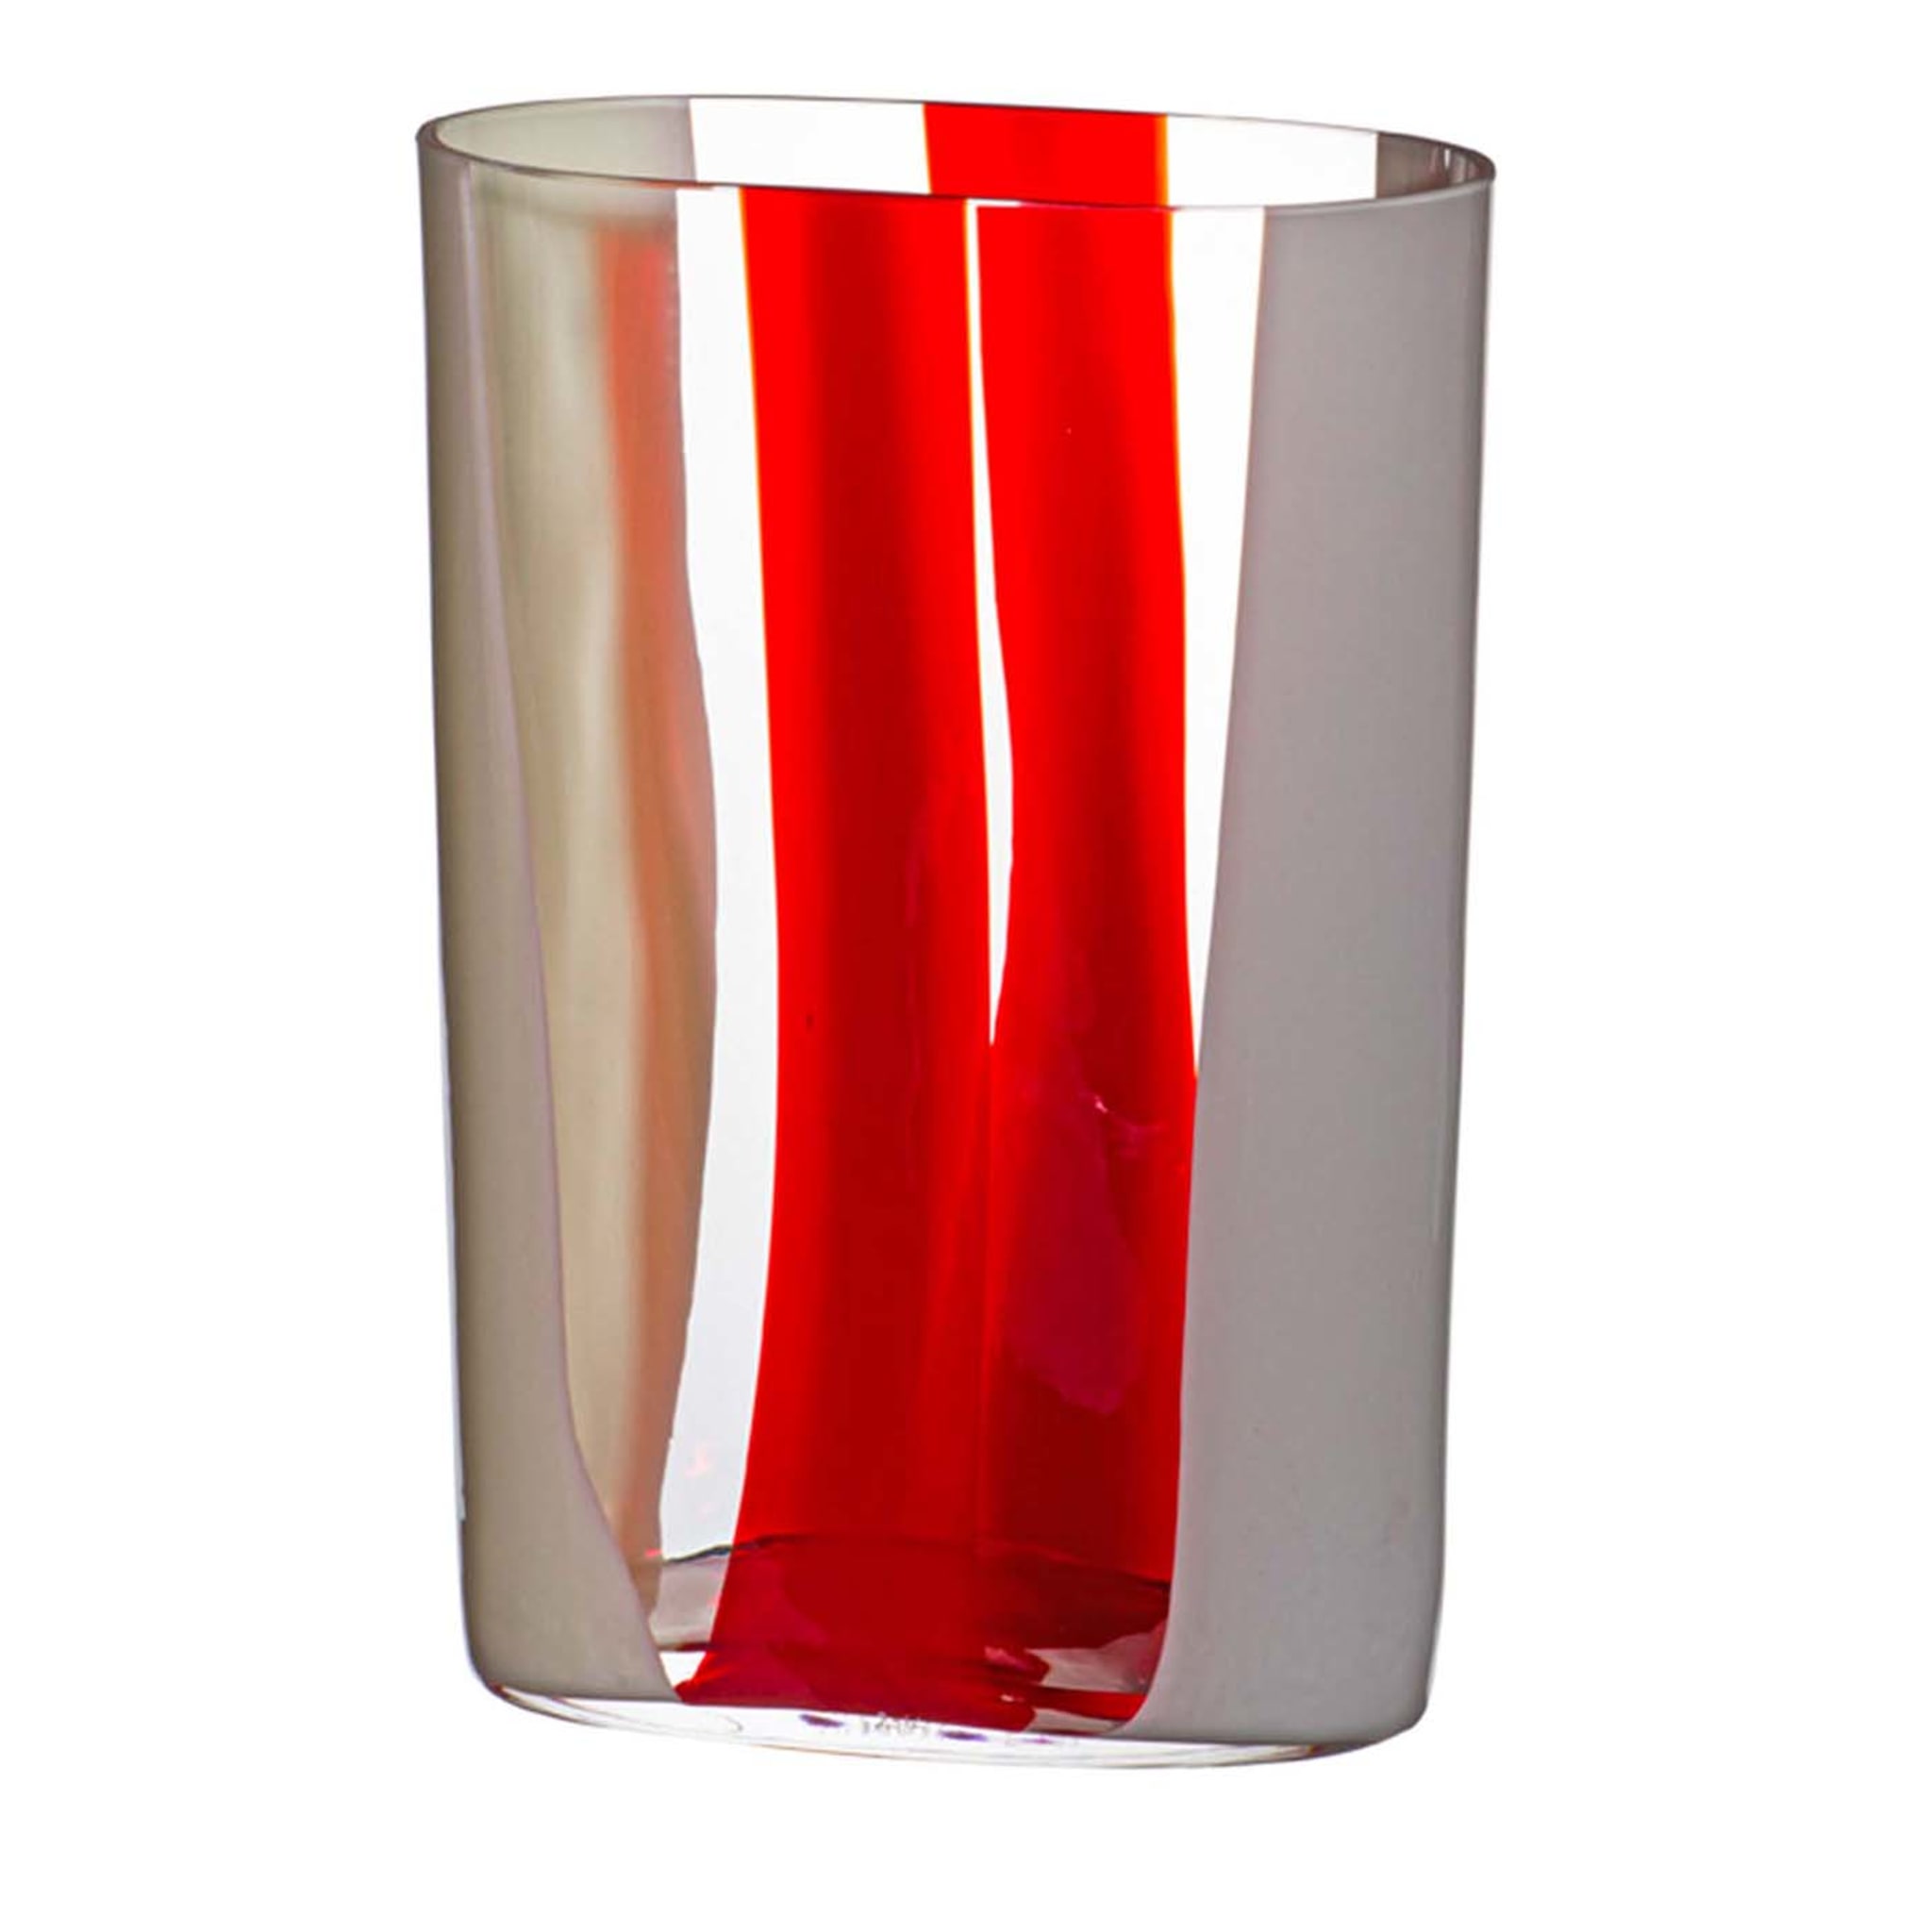 Ovale Vase mit weißen und roten Streifen von Carlo Moretti #1 - Hauptansicht